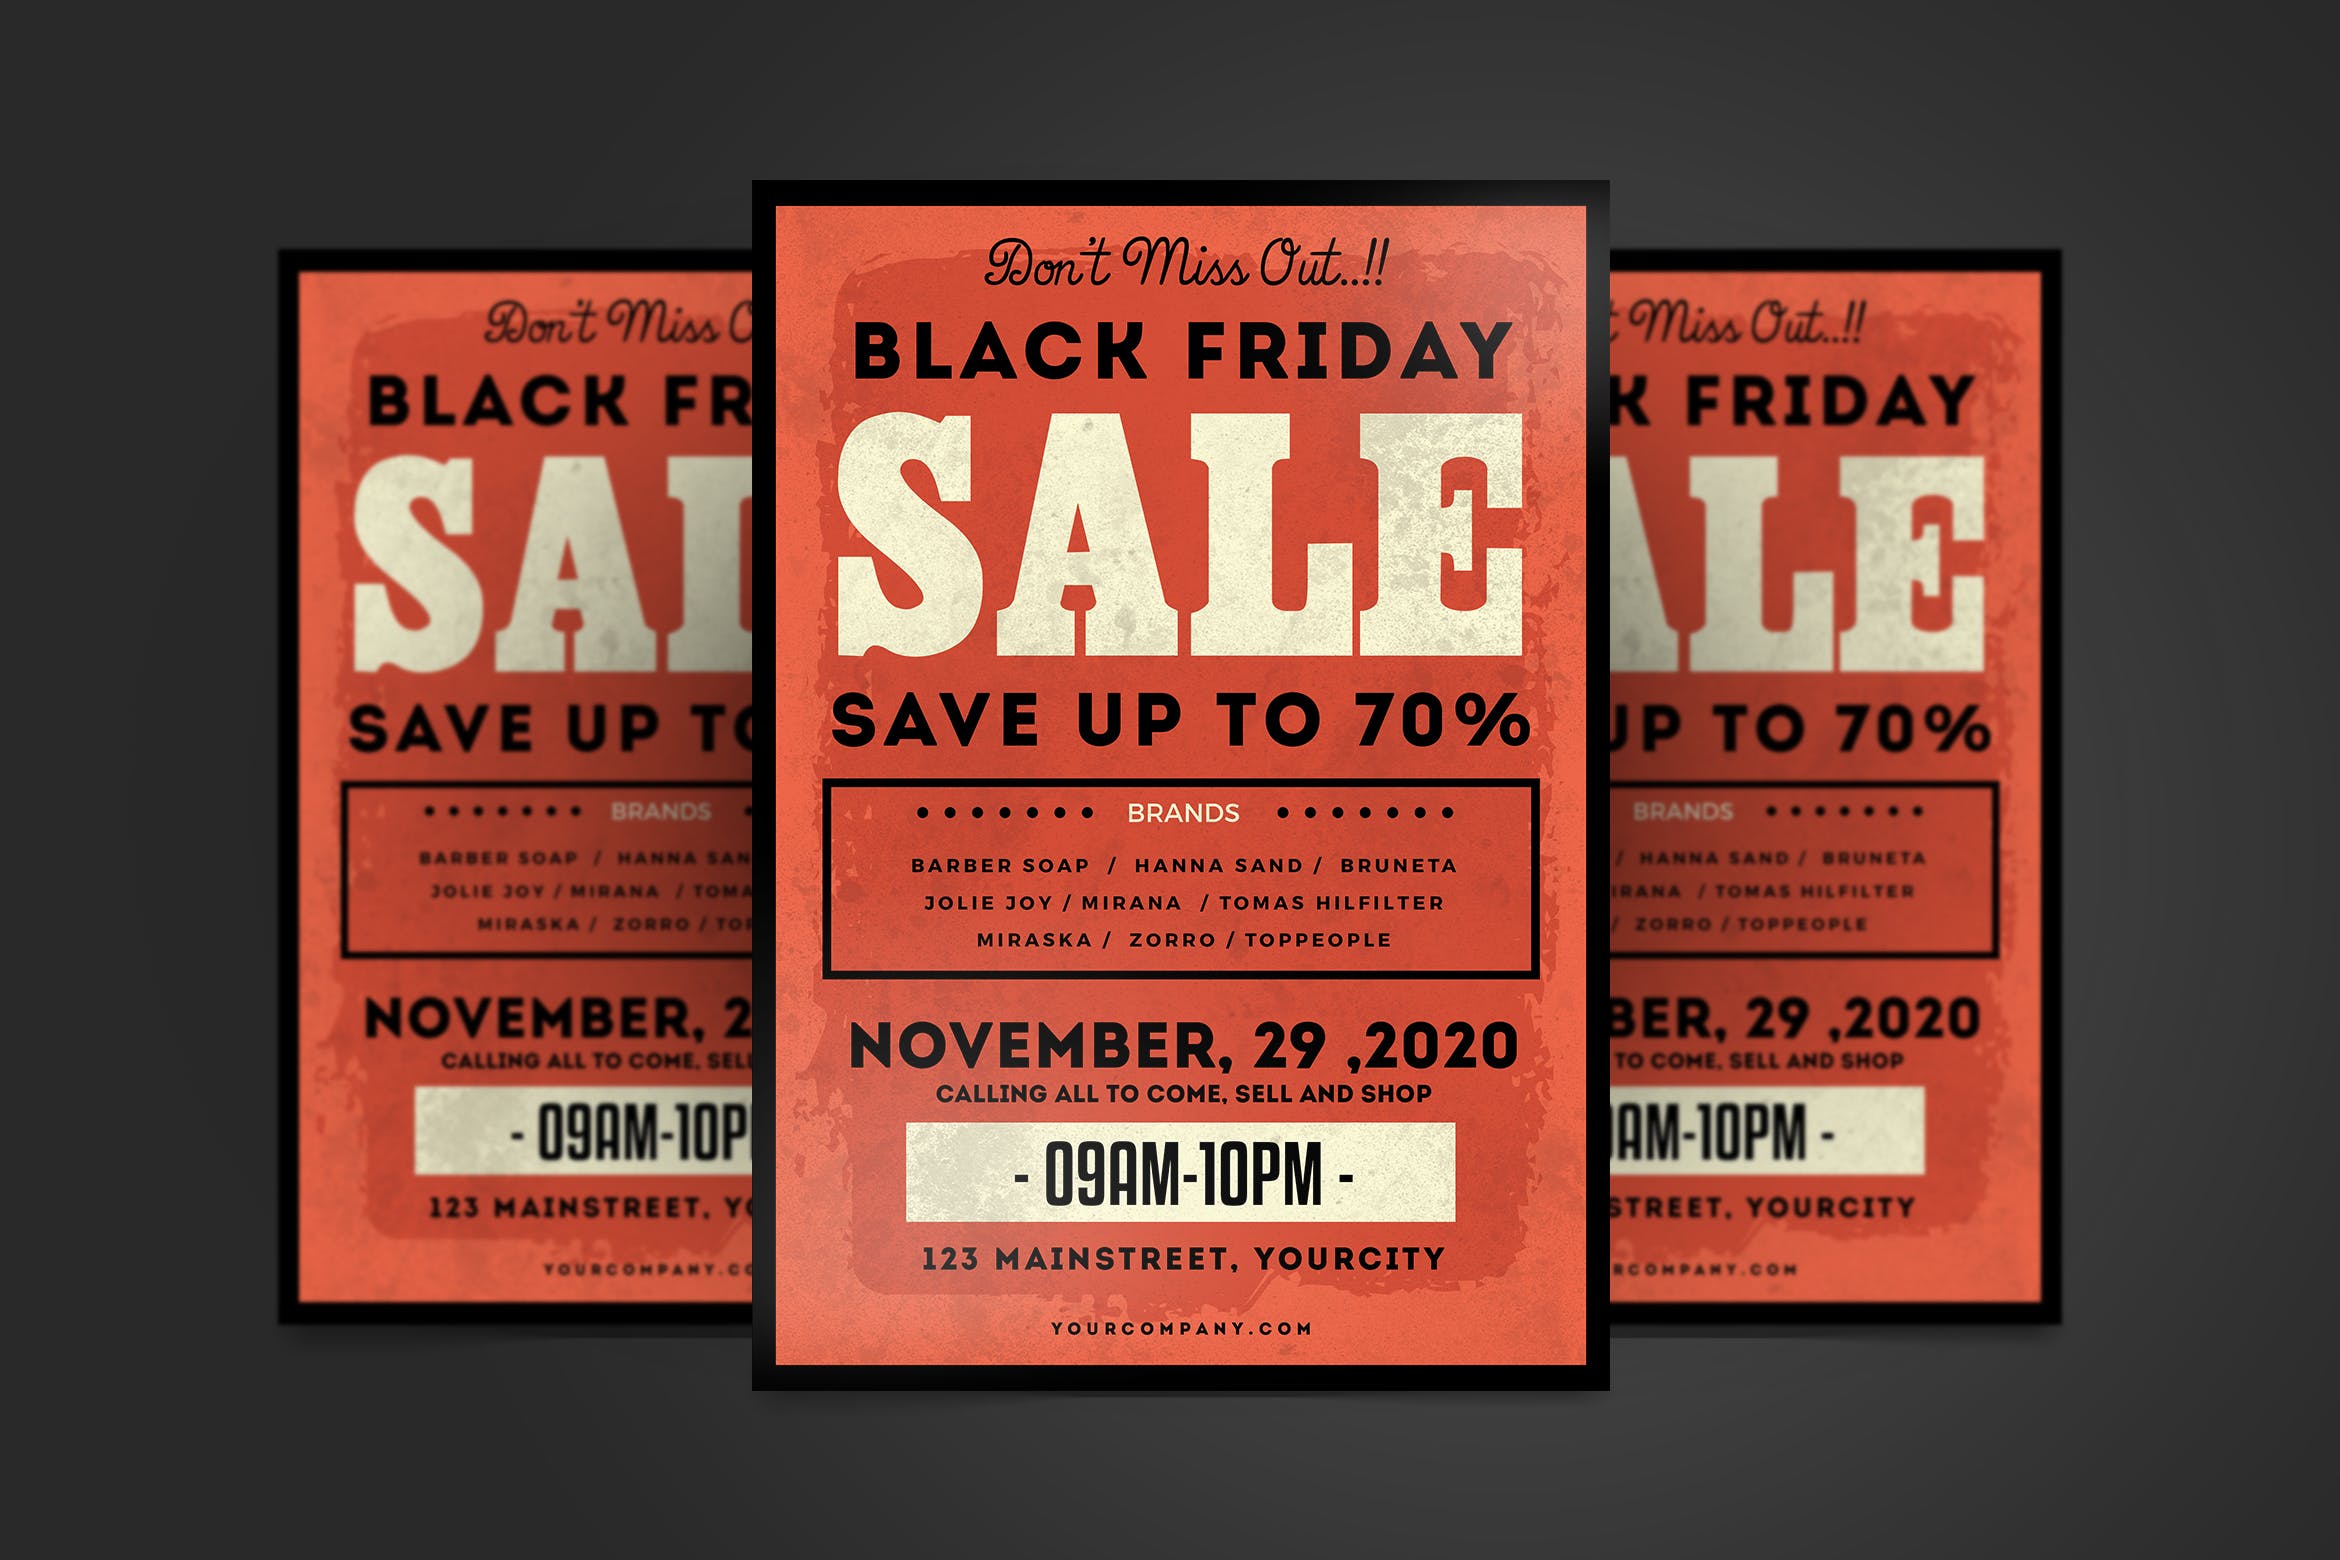 复古设计风格黒五购物节品牌联合促销活动海报传单模板 Black Friday Flyer插图